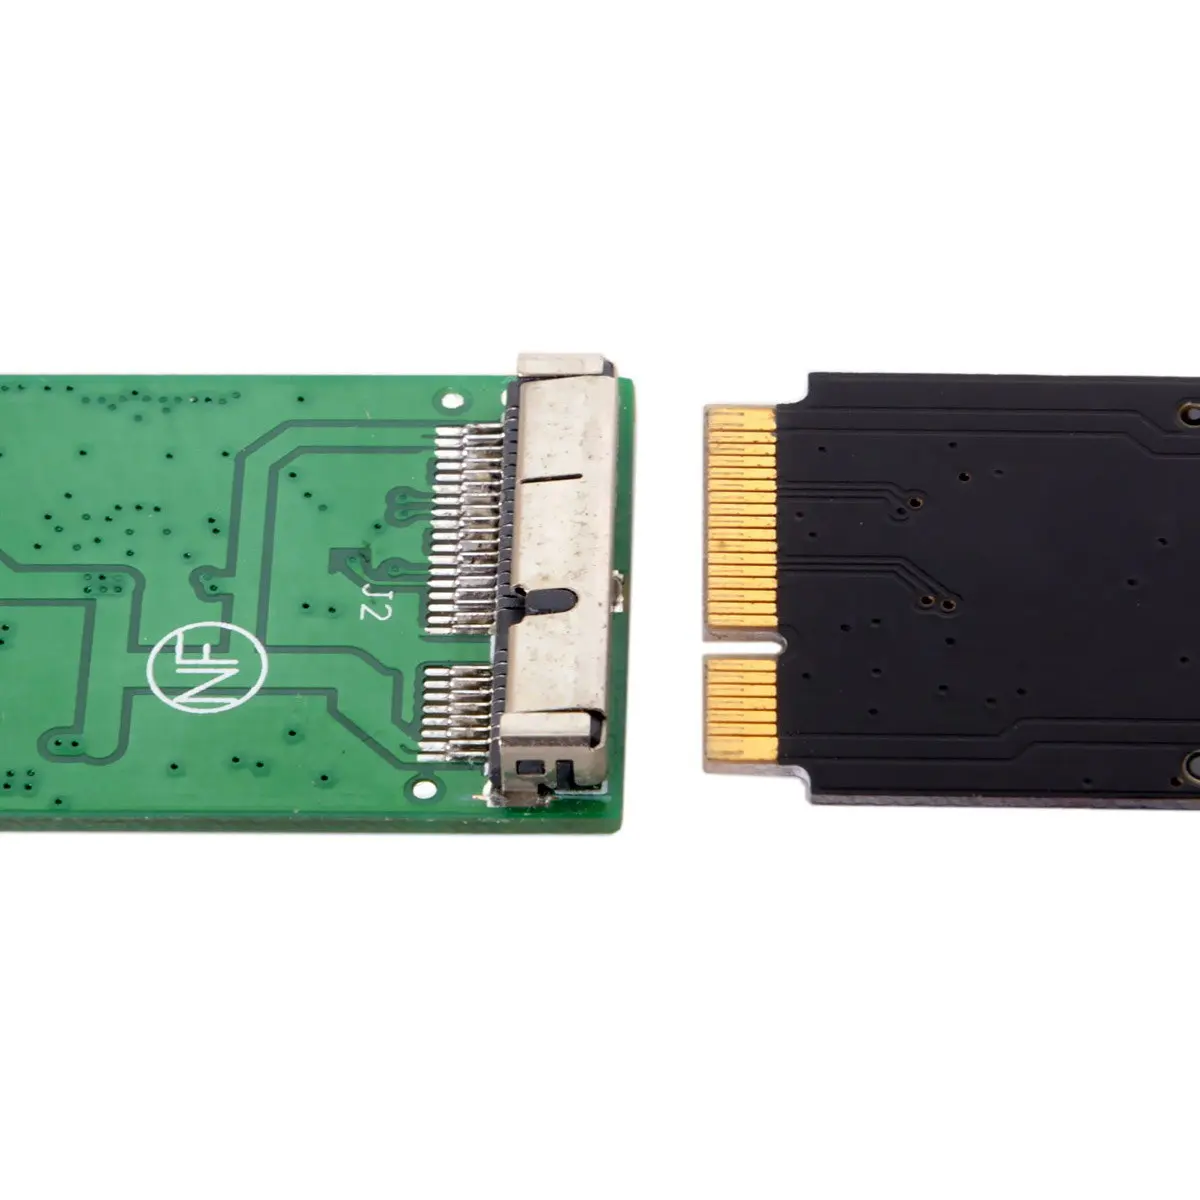 Jimier 17+7pin SSD HDD USB 3.0 Mees Kõvaketta Kassett Drive for Mac Book AIR A1465 A1466 MD223 MD224 MD231 MD213 MD232 5